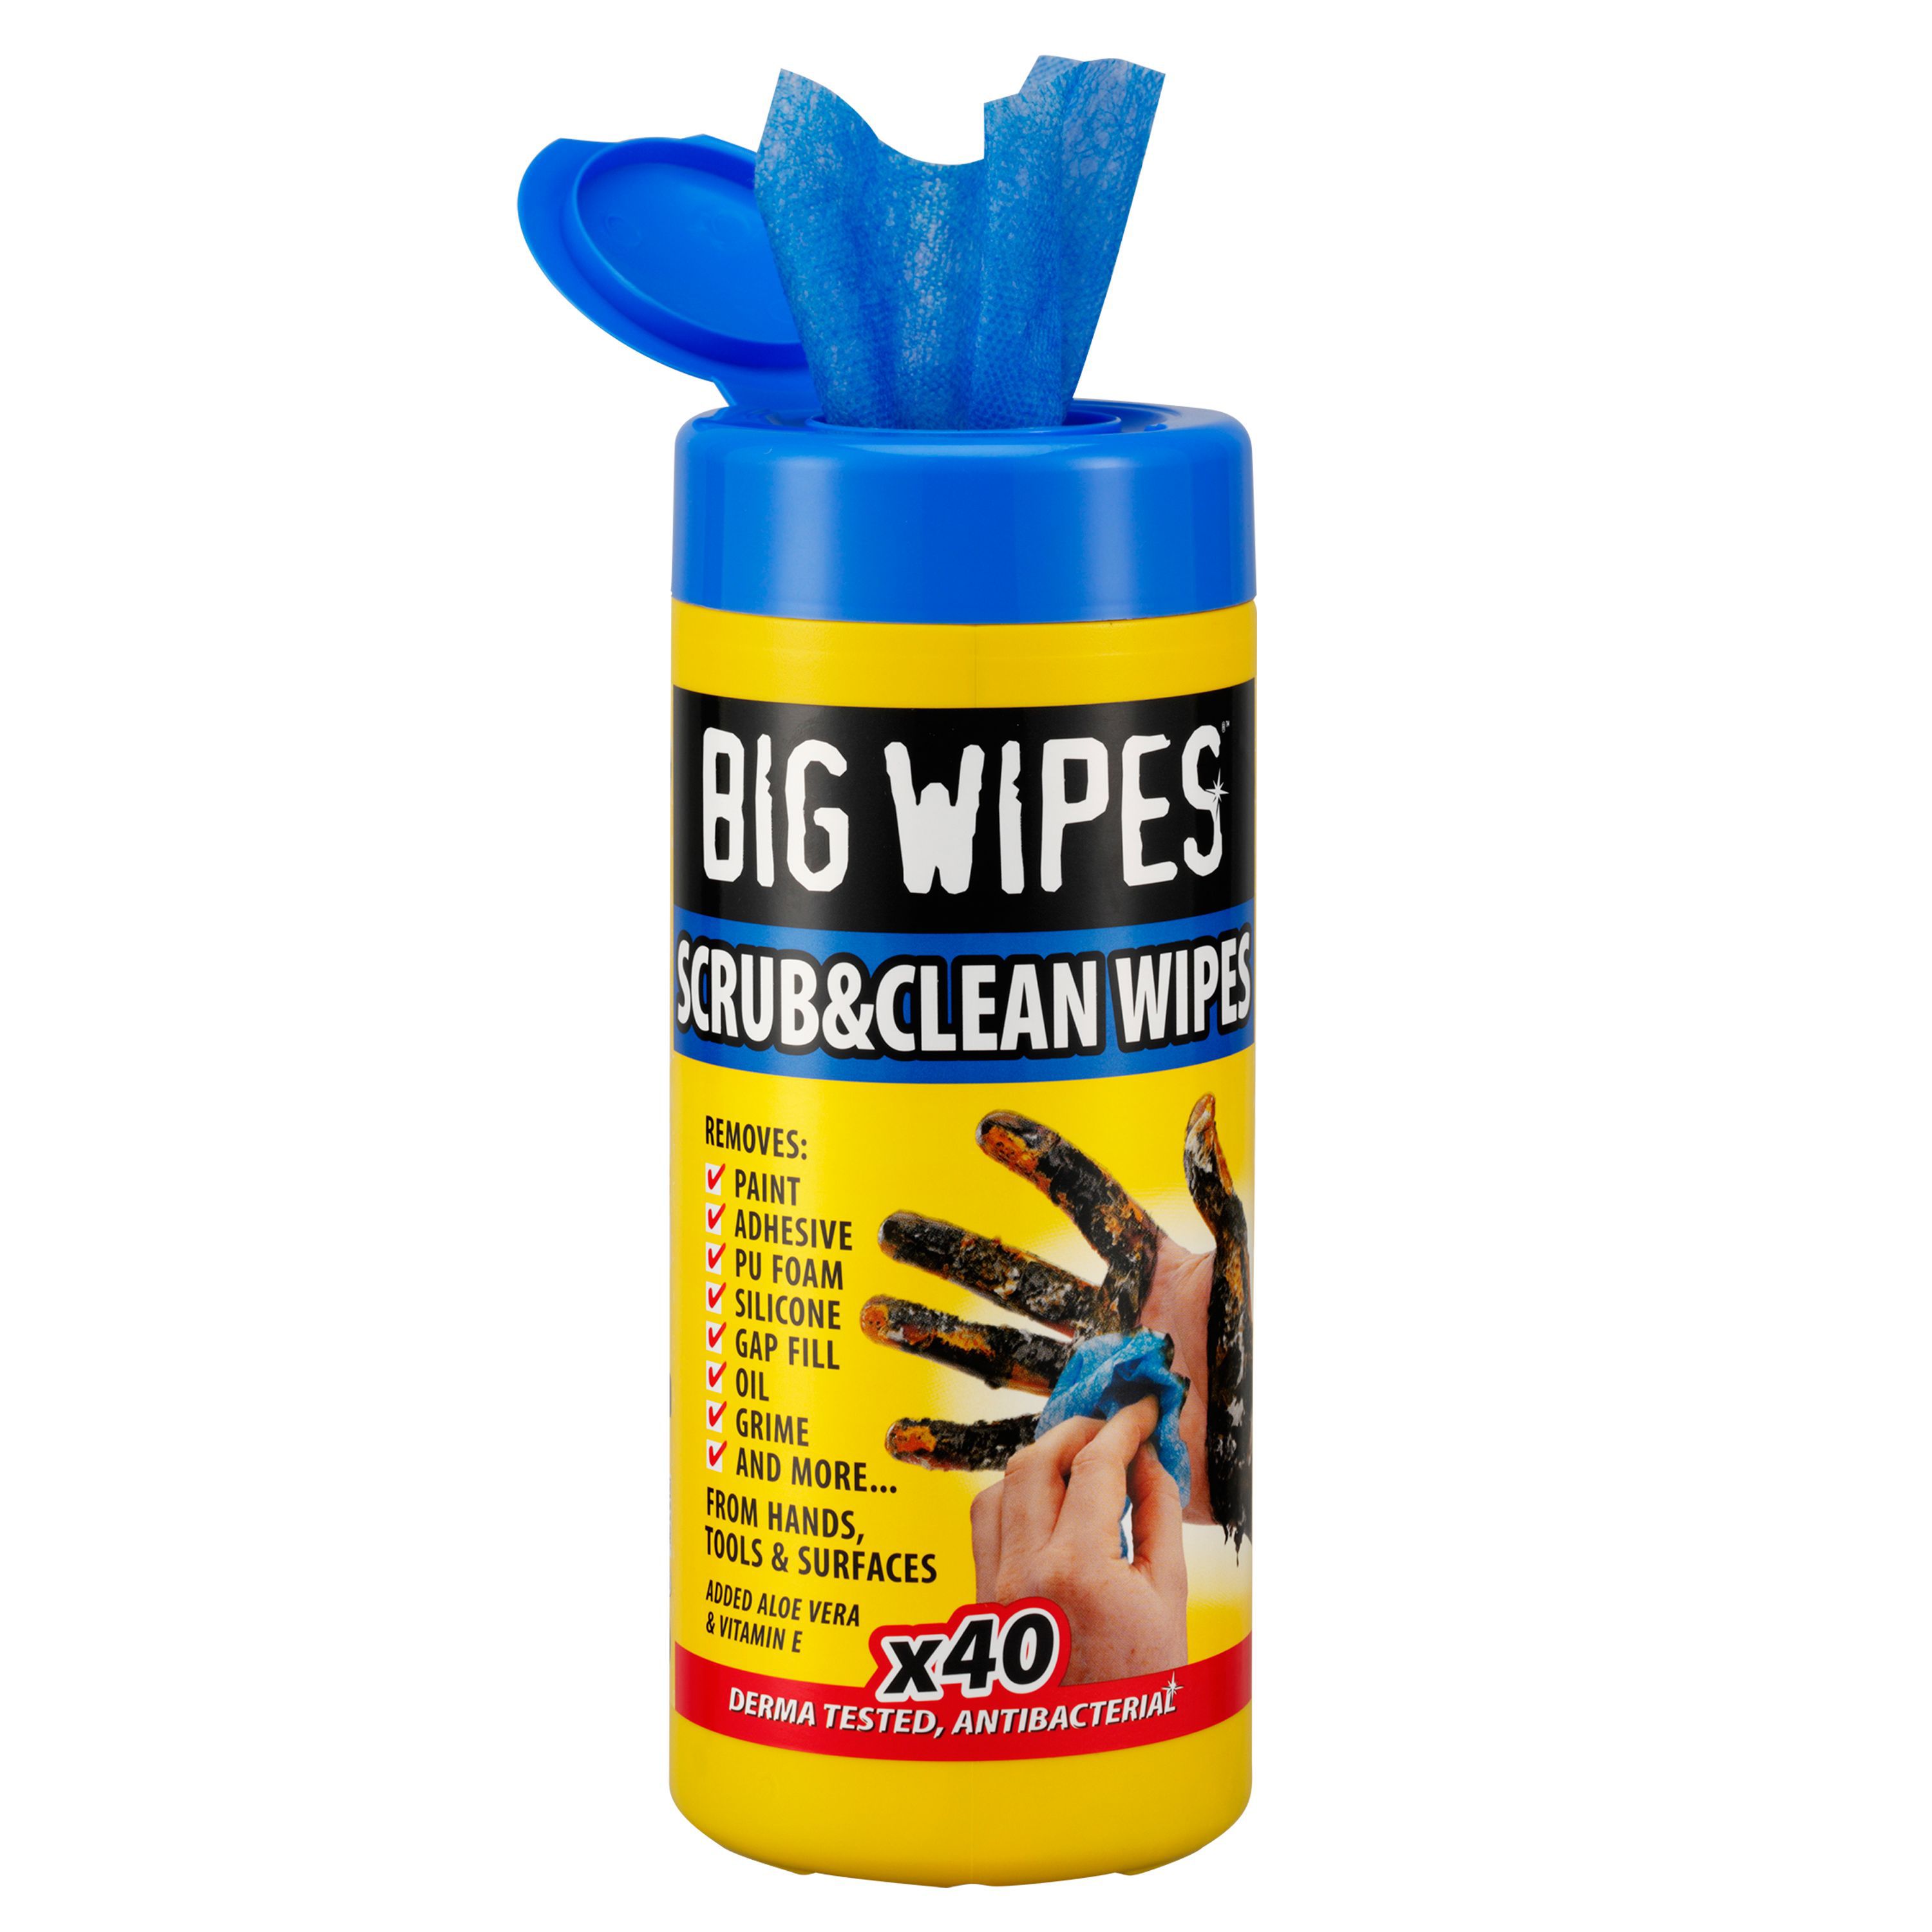 Wipe clean. Huge wipes.